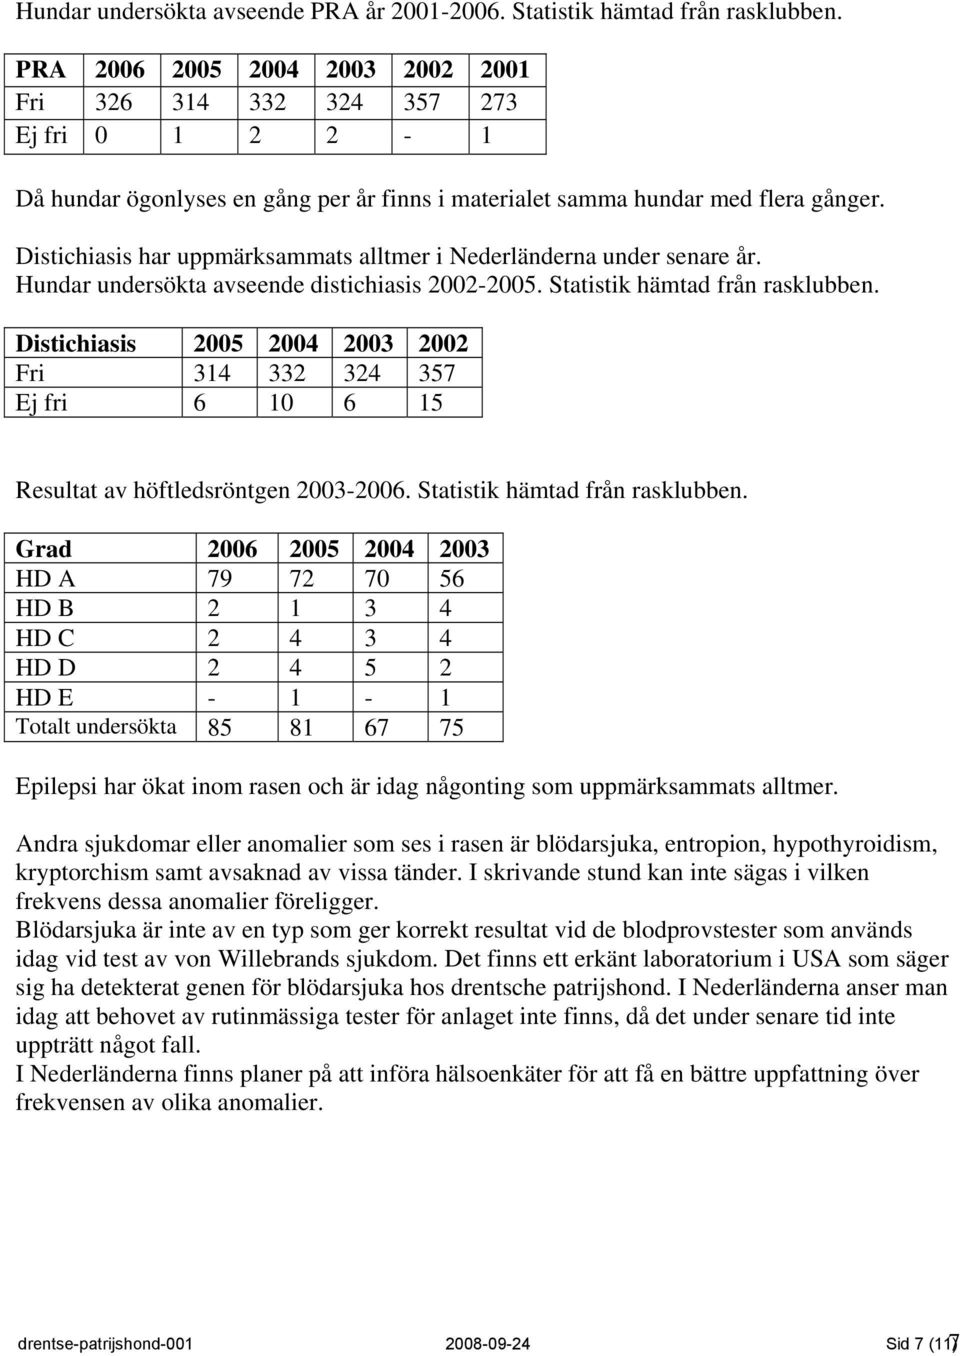 Distichiasis har uppmärksammats alltmer i Nederländerna under senare år. Hundar undersökta avseende distichiasis 2002-2005. Statistik hämtad från rasklubben.